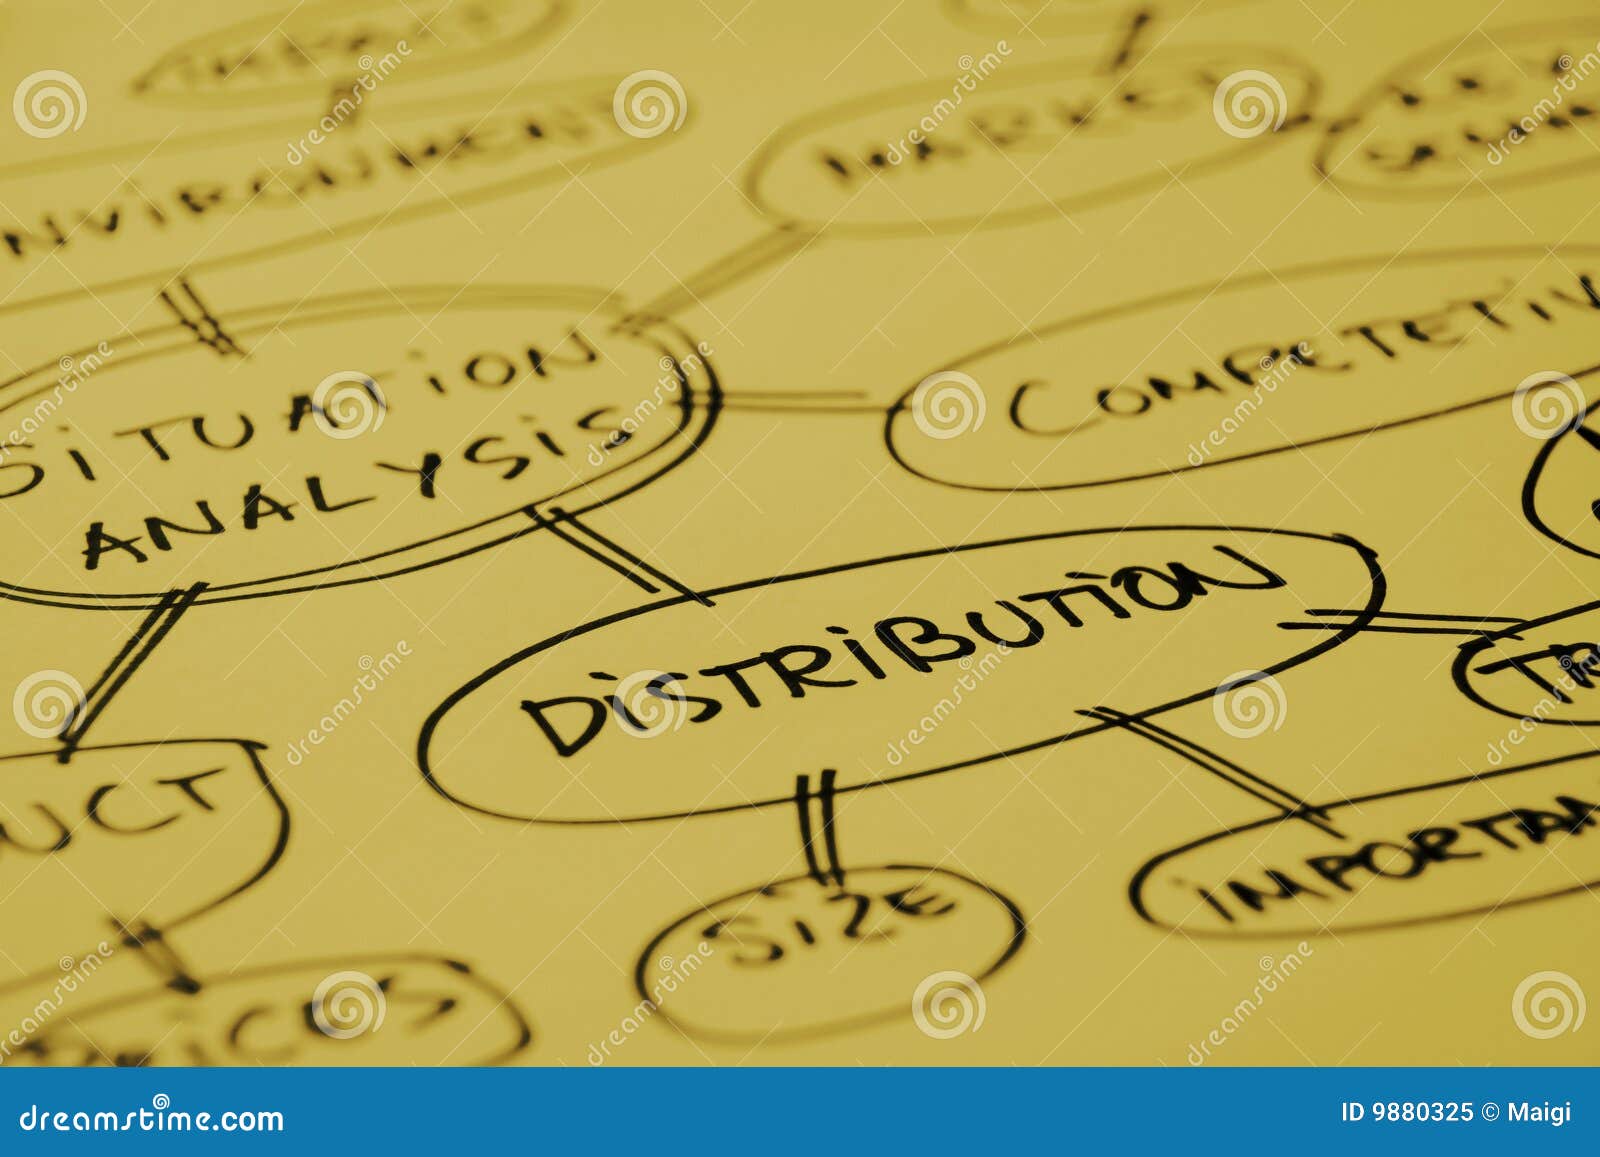 distribution analysis graph